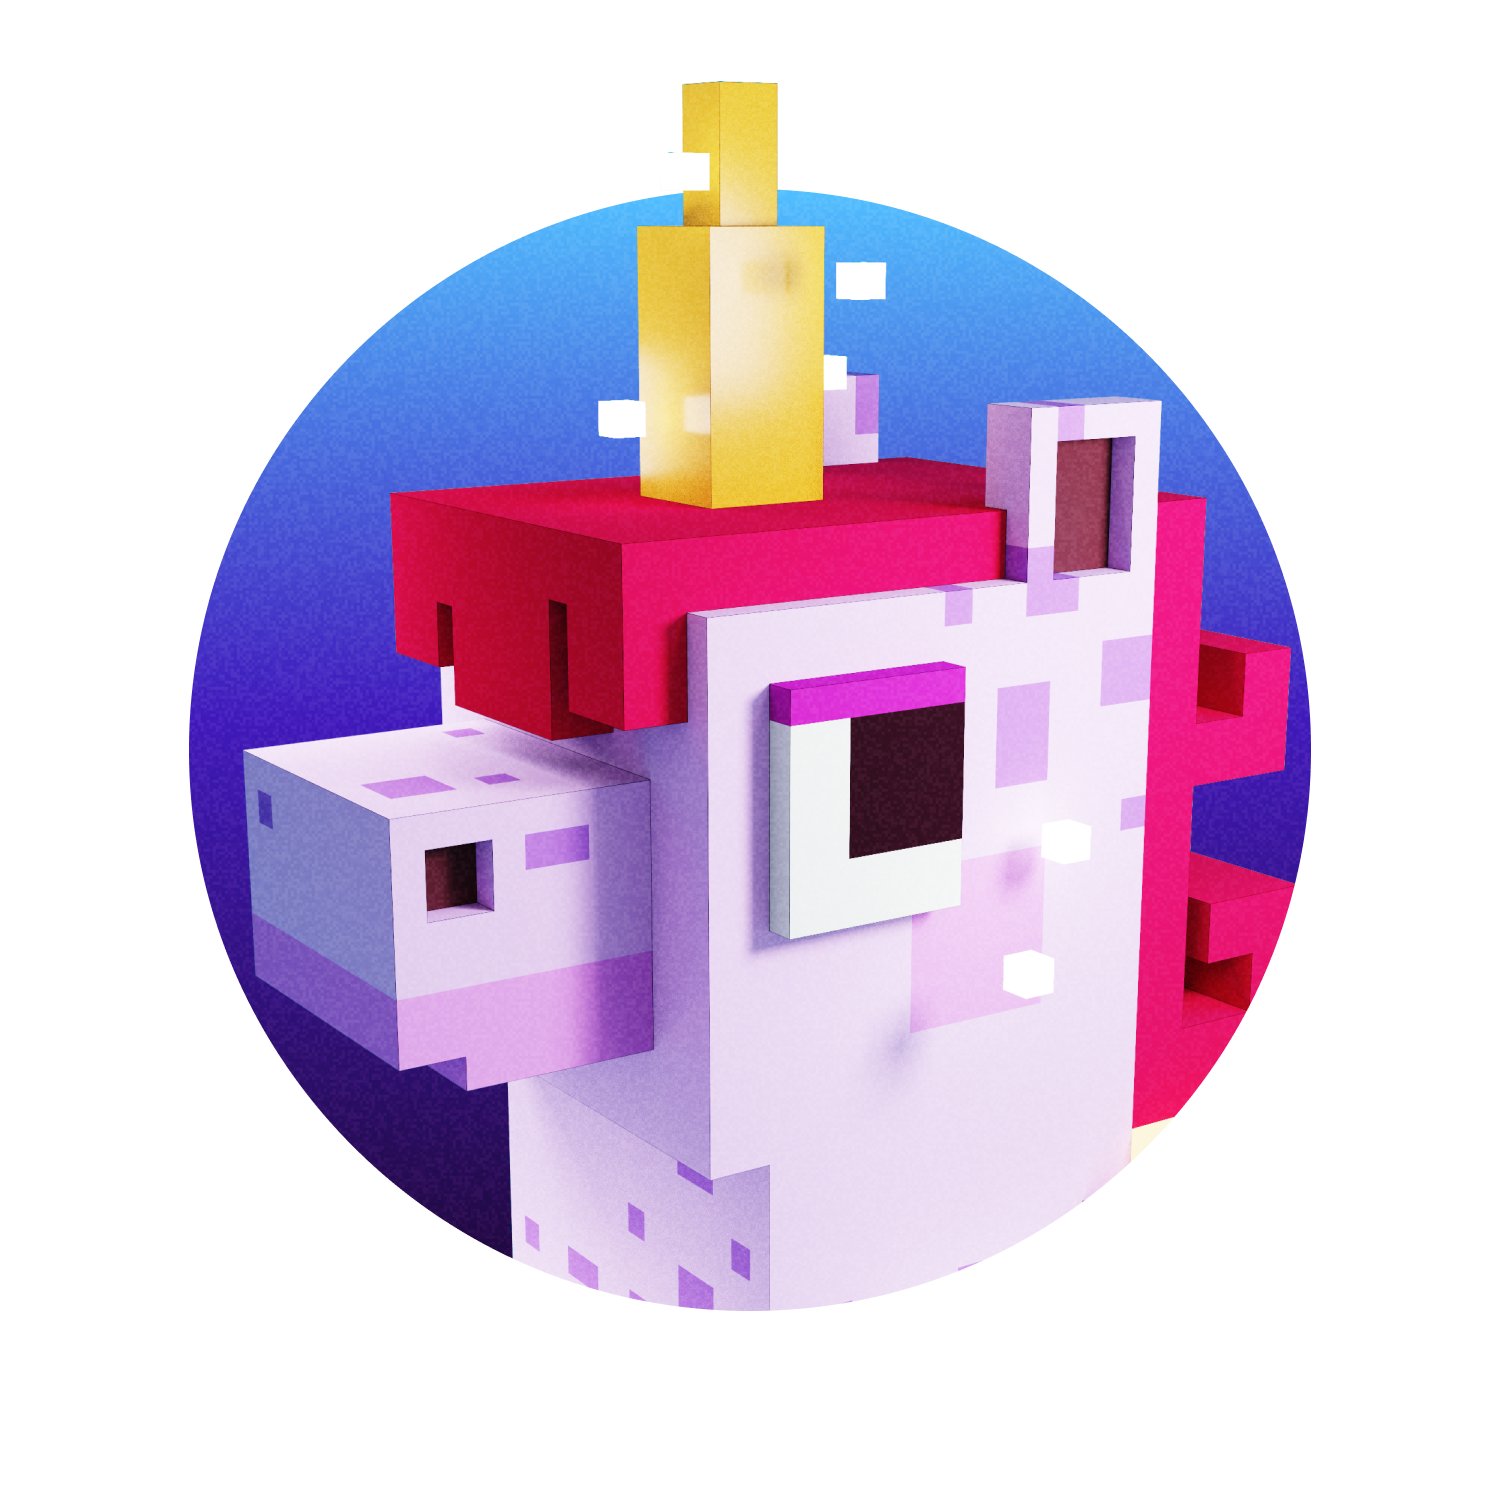 Voxel Winged Unicorn: Những chú ngựa mộng mơ với cánh bằng chất liệu voxel đầy màu sắc chắc chắn sẽ khiến bạn say mê. Với Voxel Winged Unicorn, bạn sẽ khám phá một thế giới ảo kỳ thú với những sinh vật siêu dễ thương và phong cách trò chơi đỉnh cao.